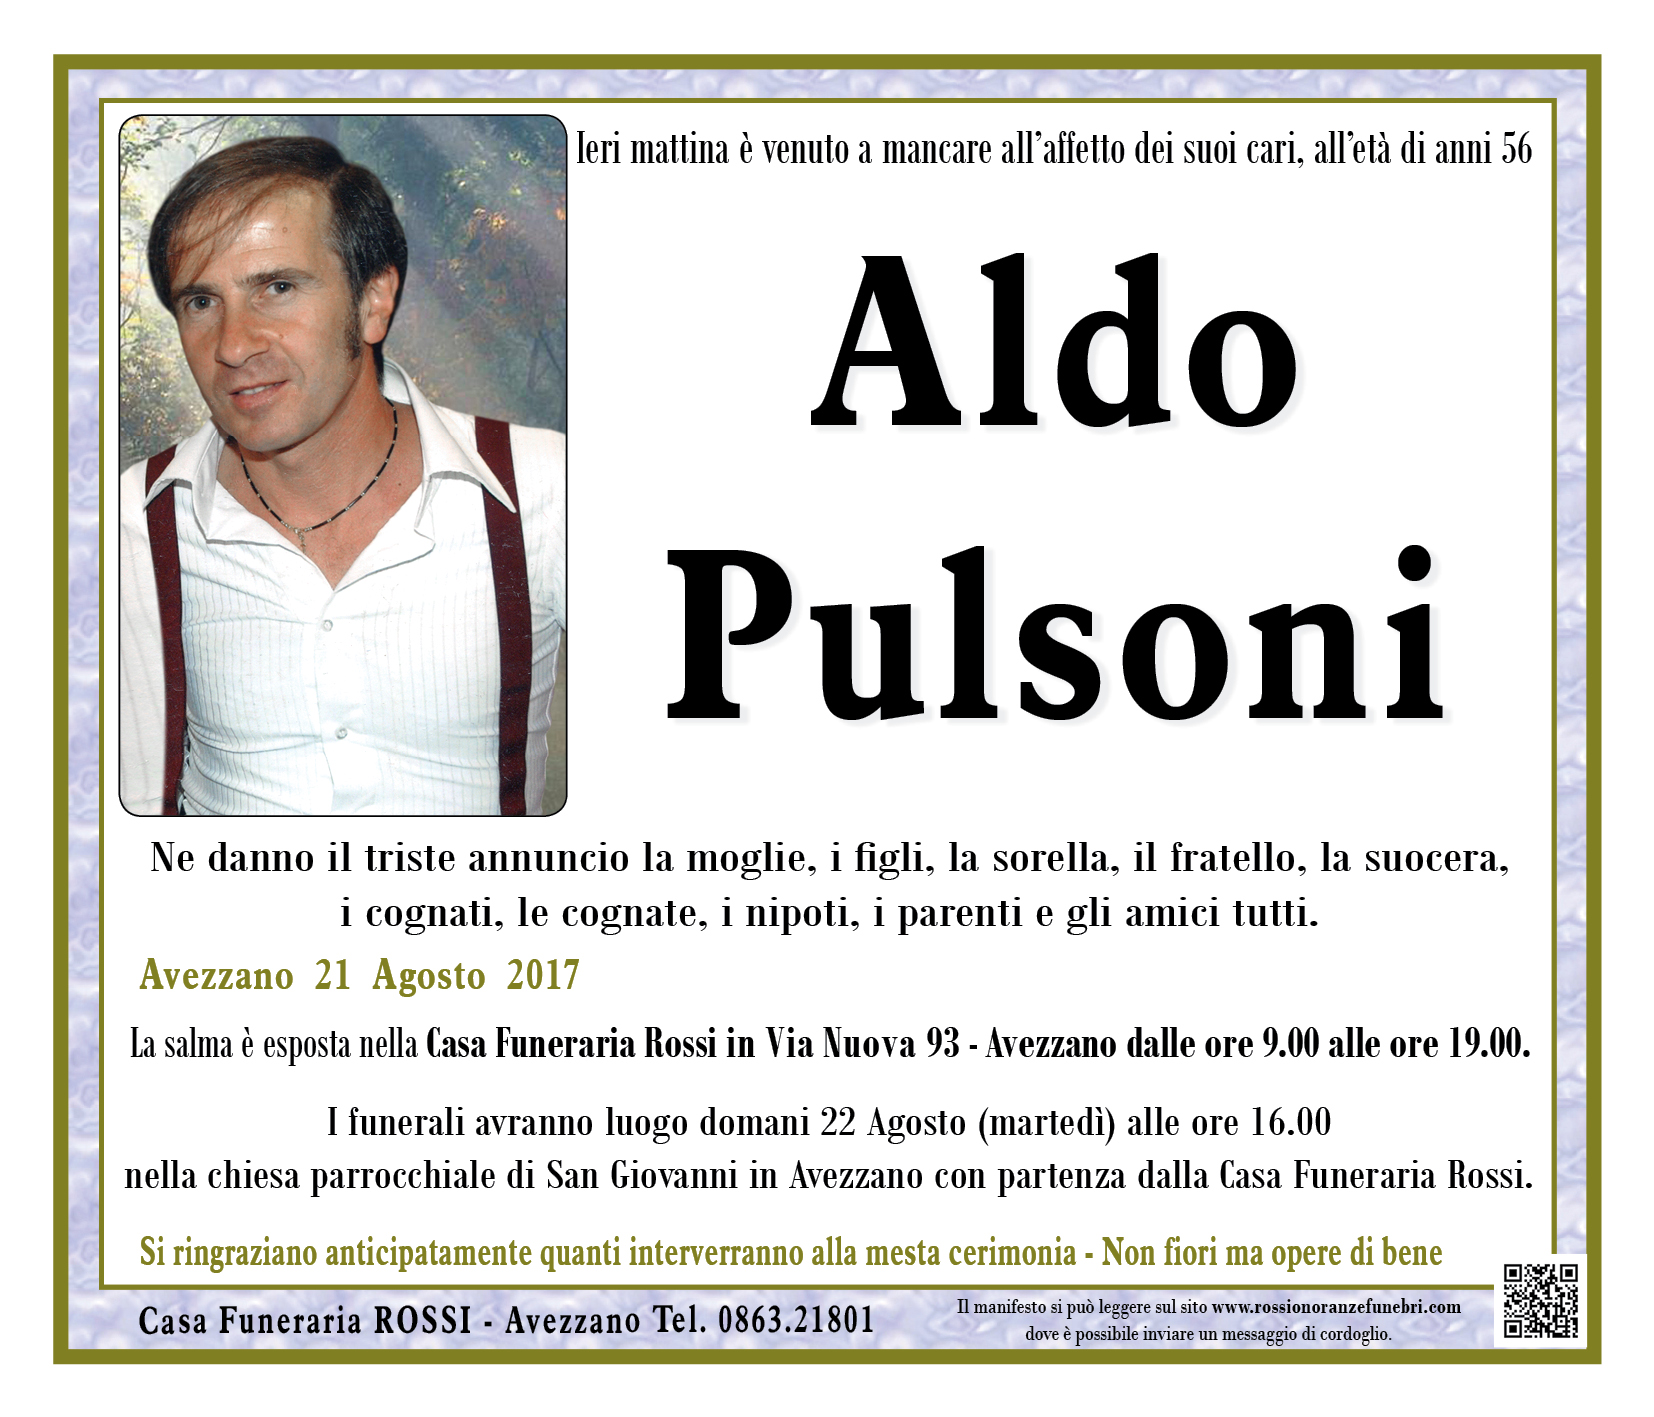 Aldo Pulsoni